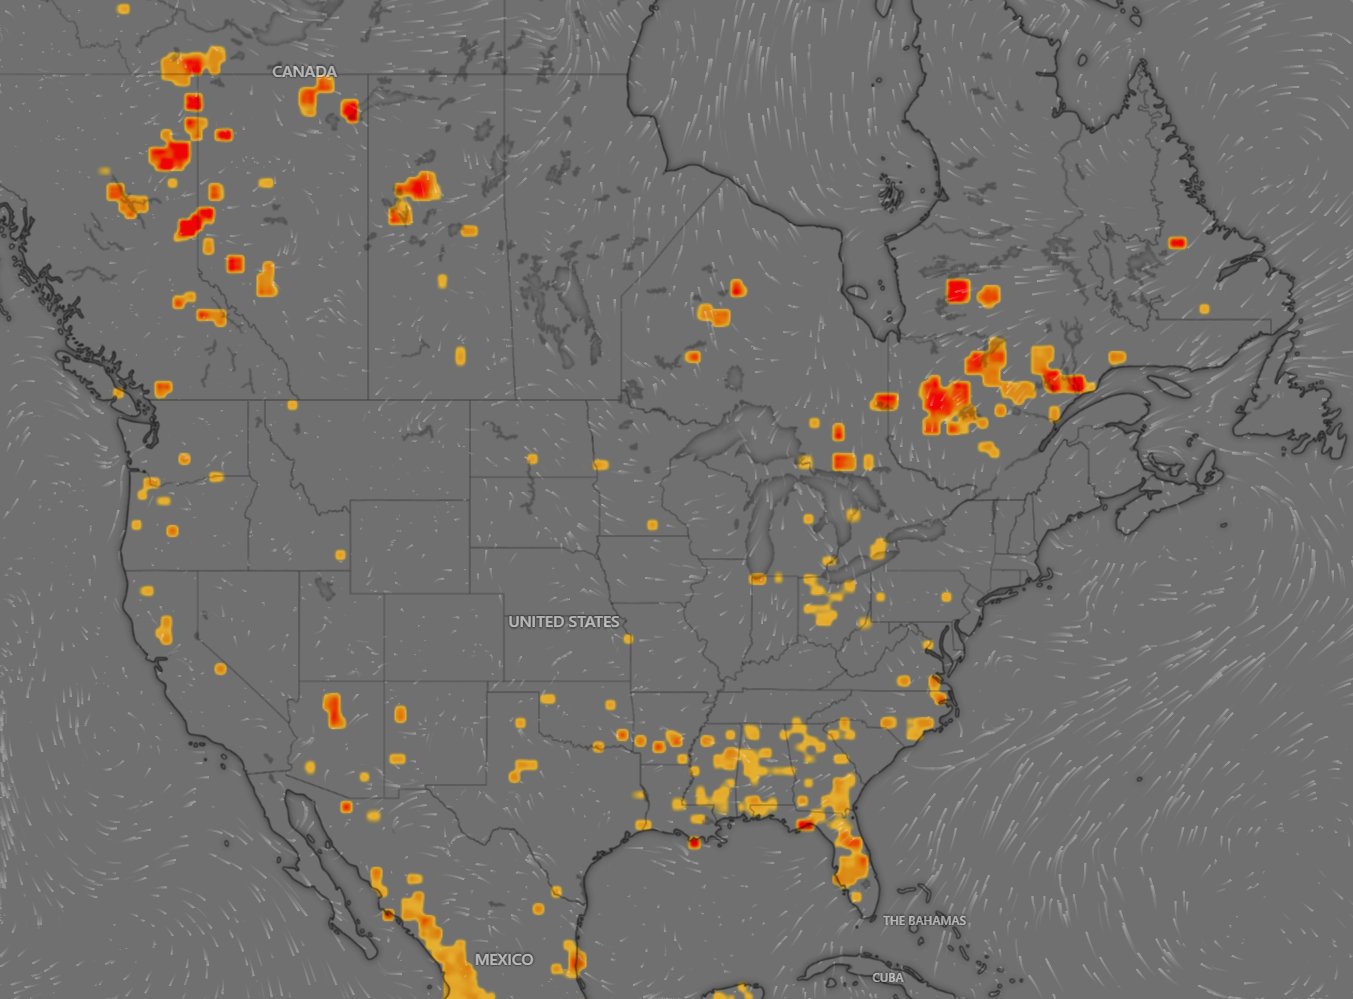 Cielo naranja ocasionado por los incendios forestales de Canadá se desplaza a Estados Unidos.